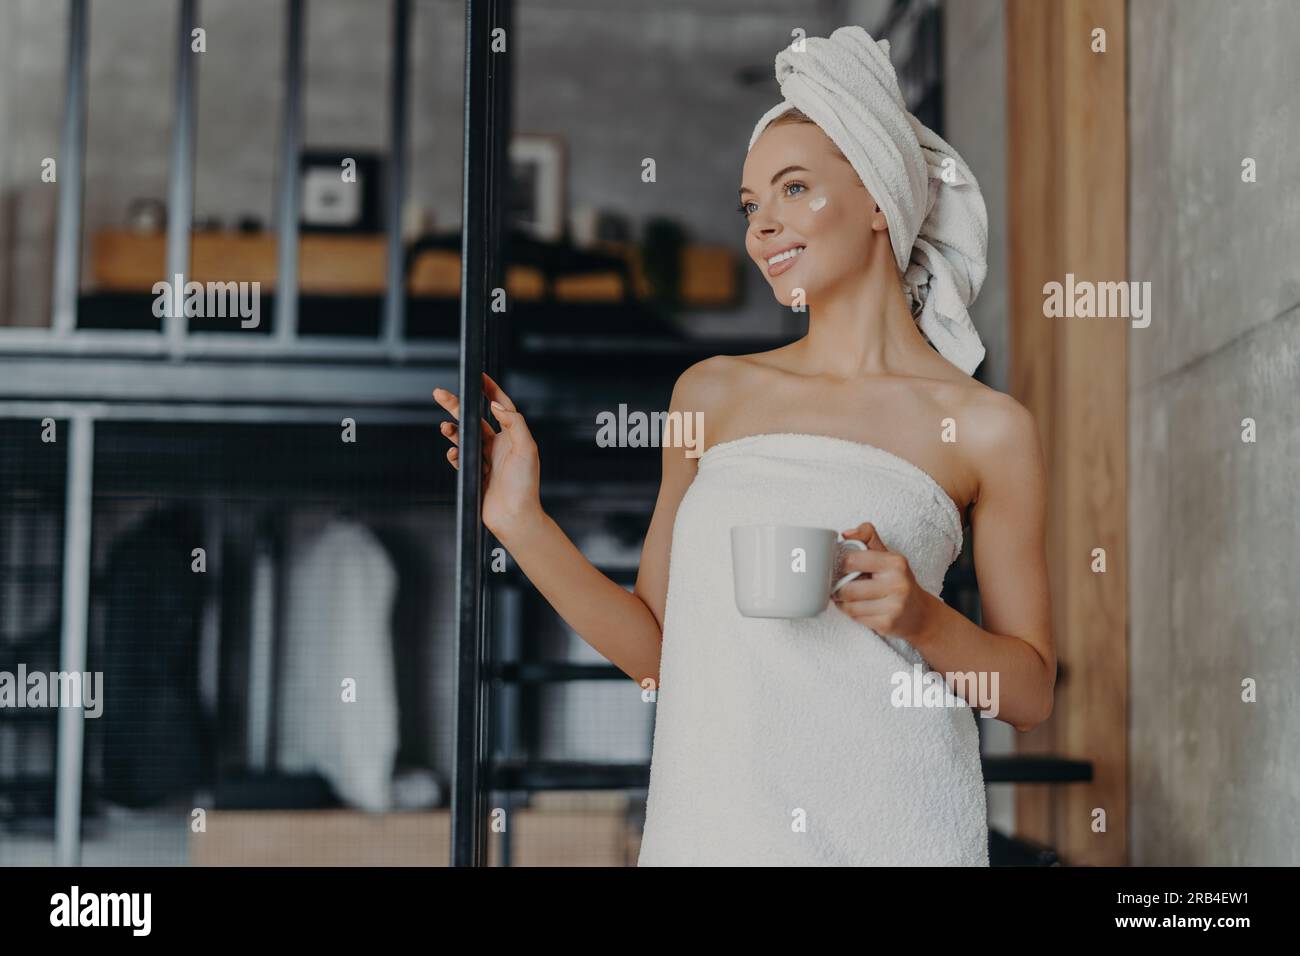 Una donna premurosa sorride, applica la crema, avvolto in un asciugamano, beve tè, si rilassa sulle scale interne dopo il bagno Foto Stock